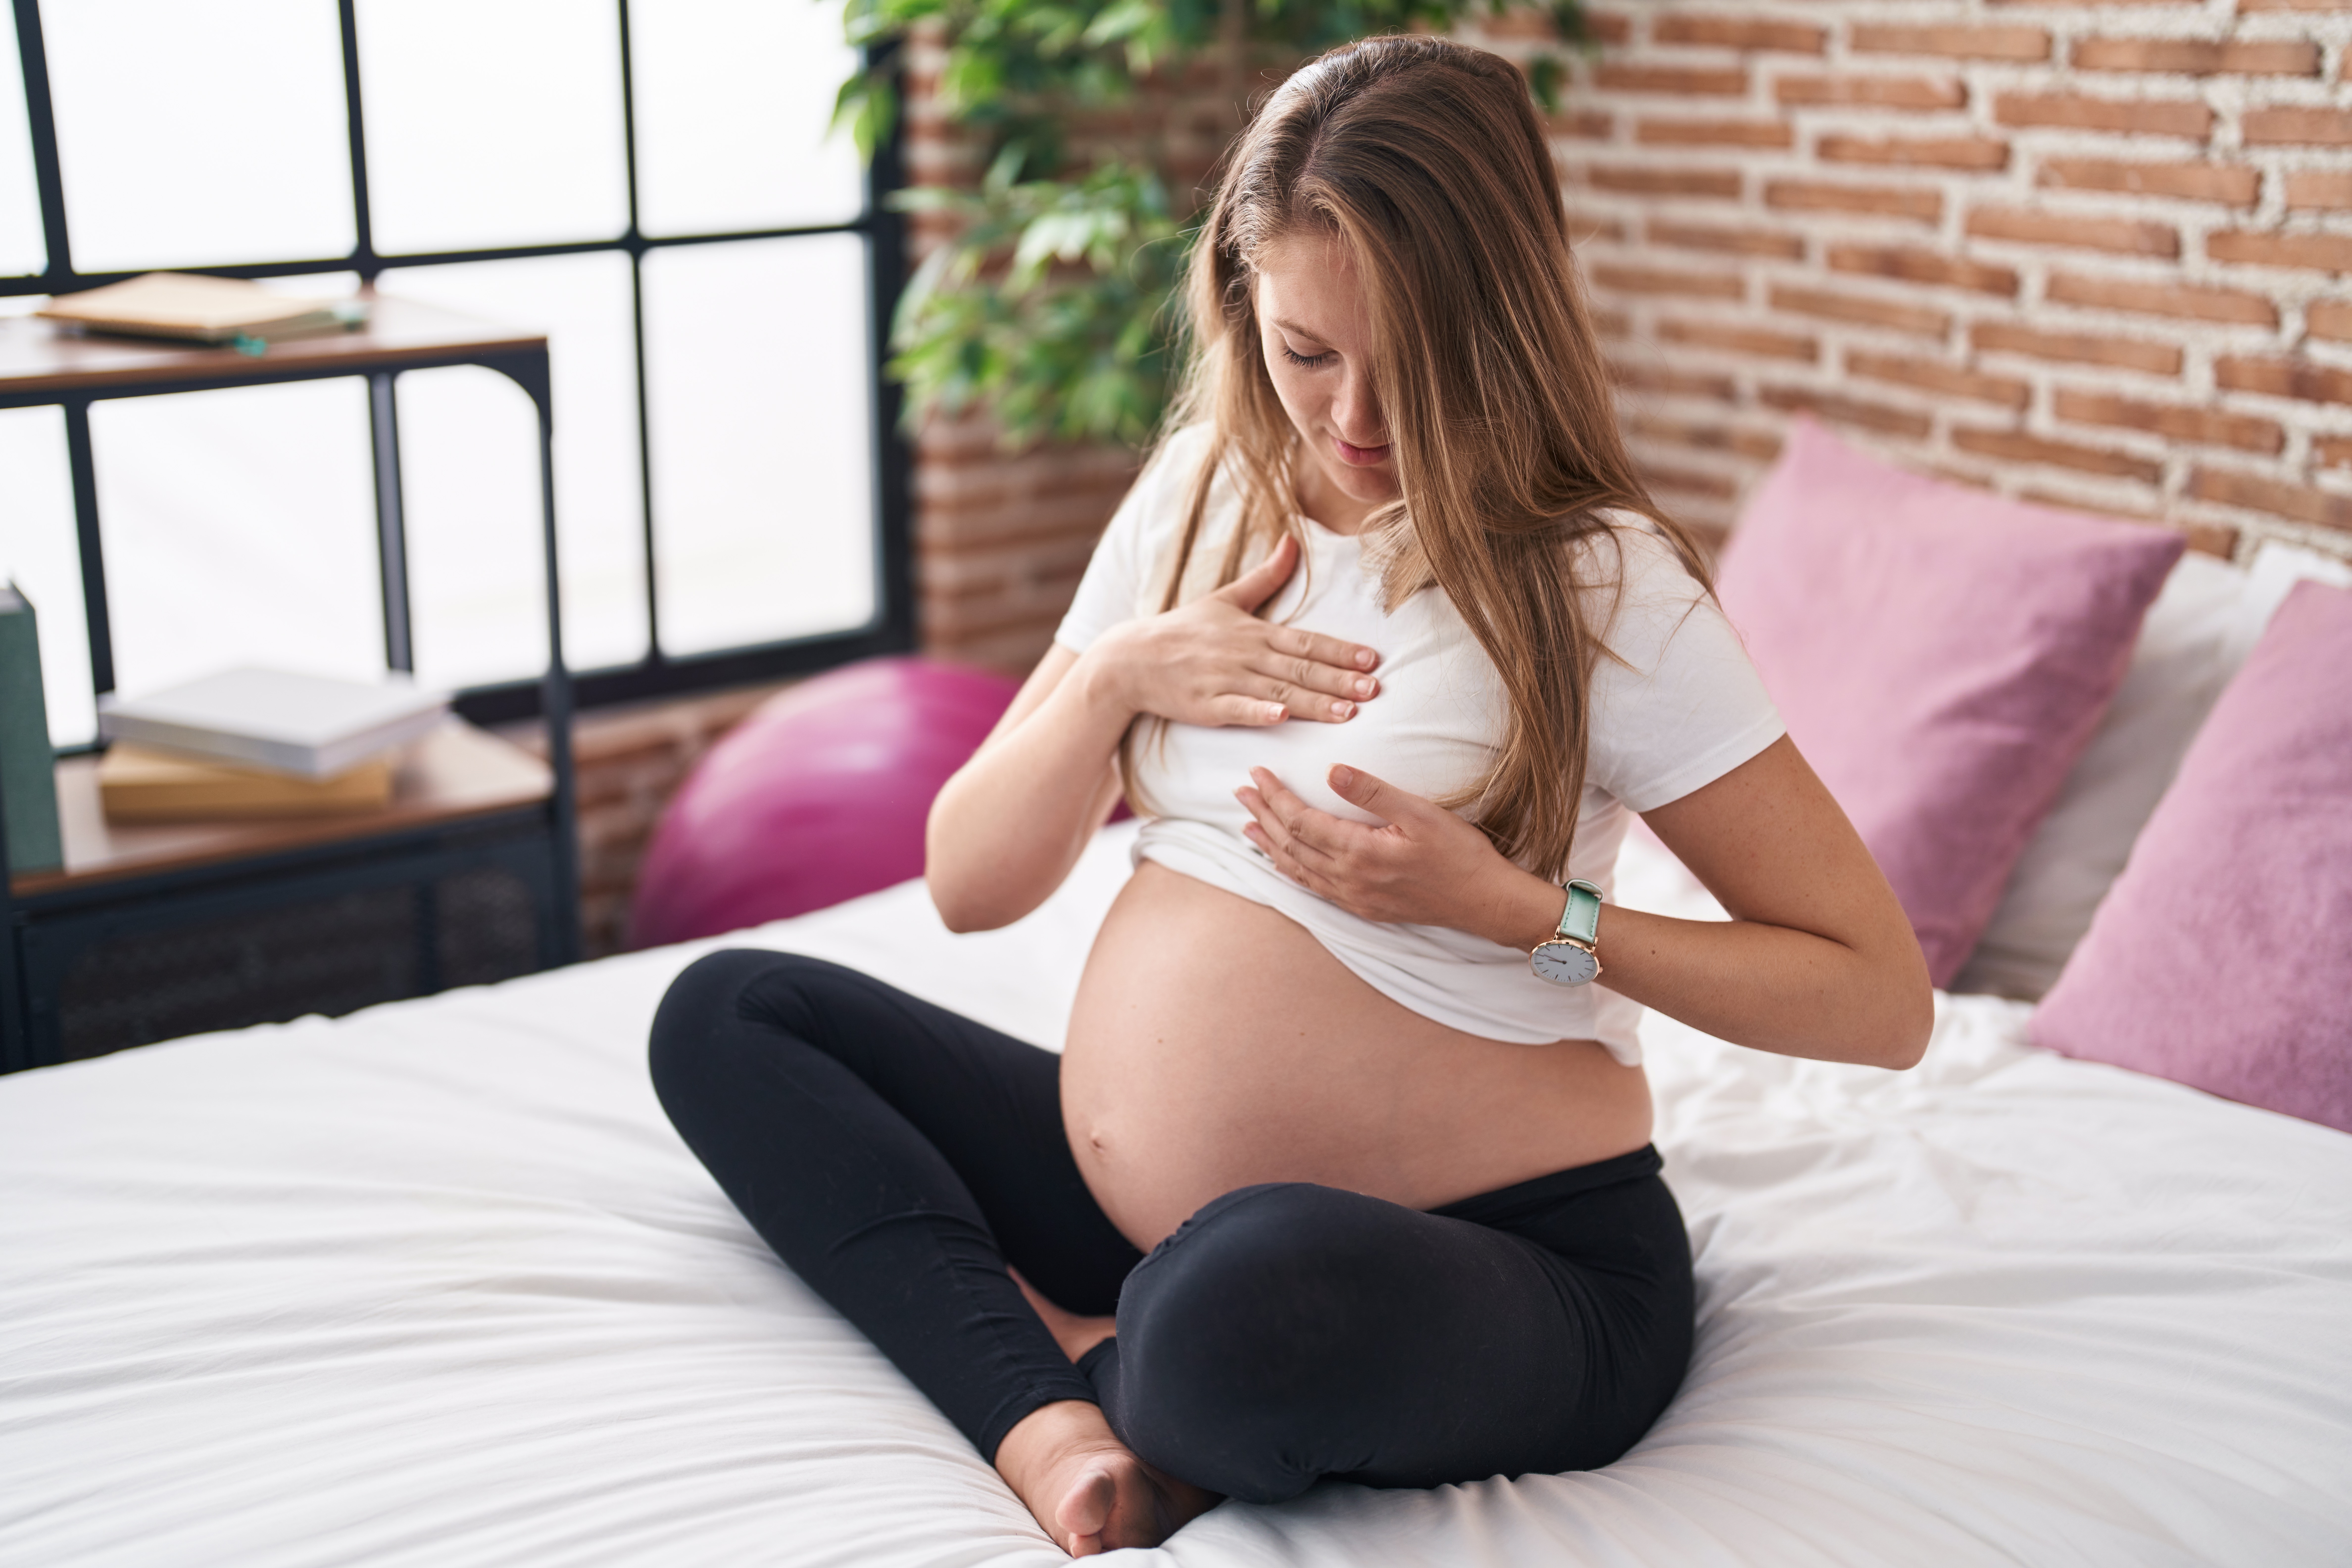 A menstruação irregular pode influenciar na fertilidade? - Maternidade D`Or